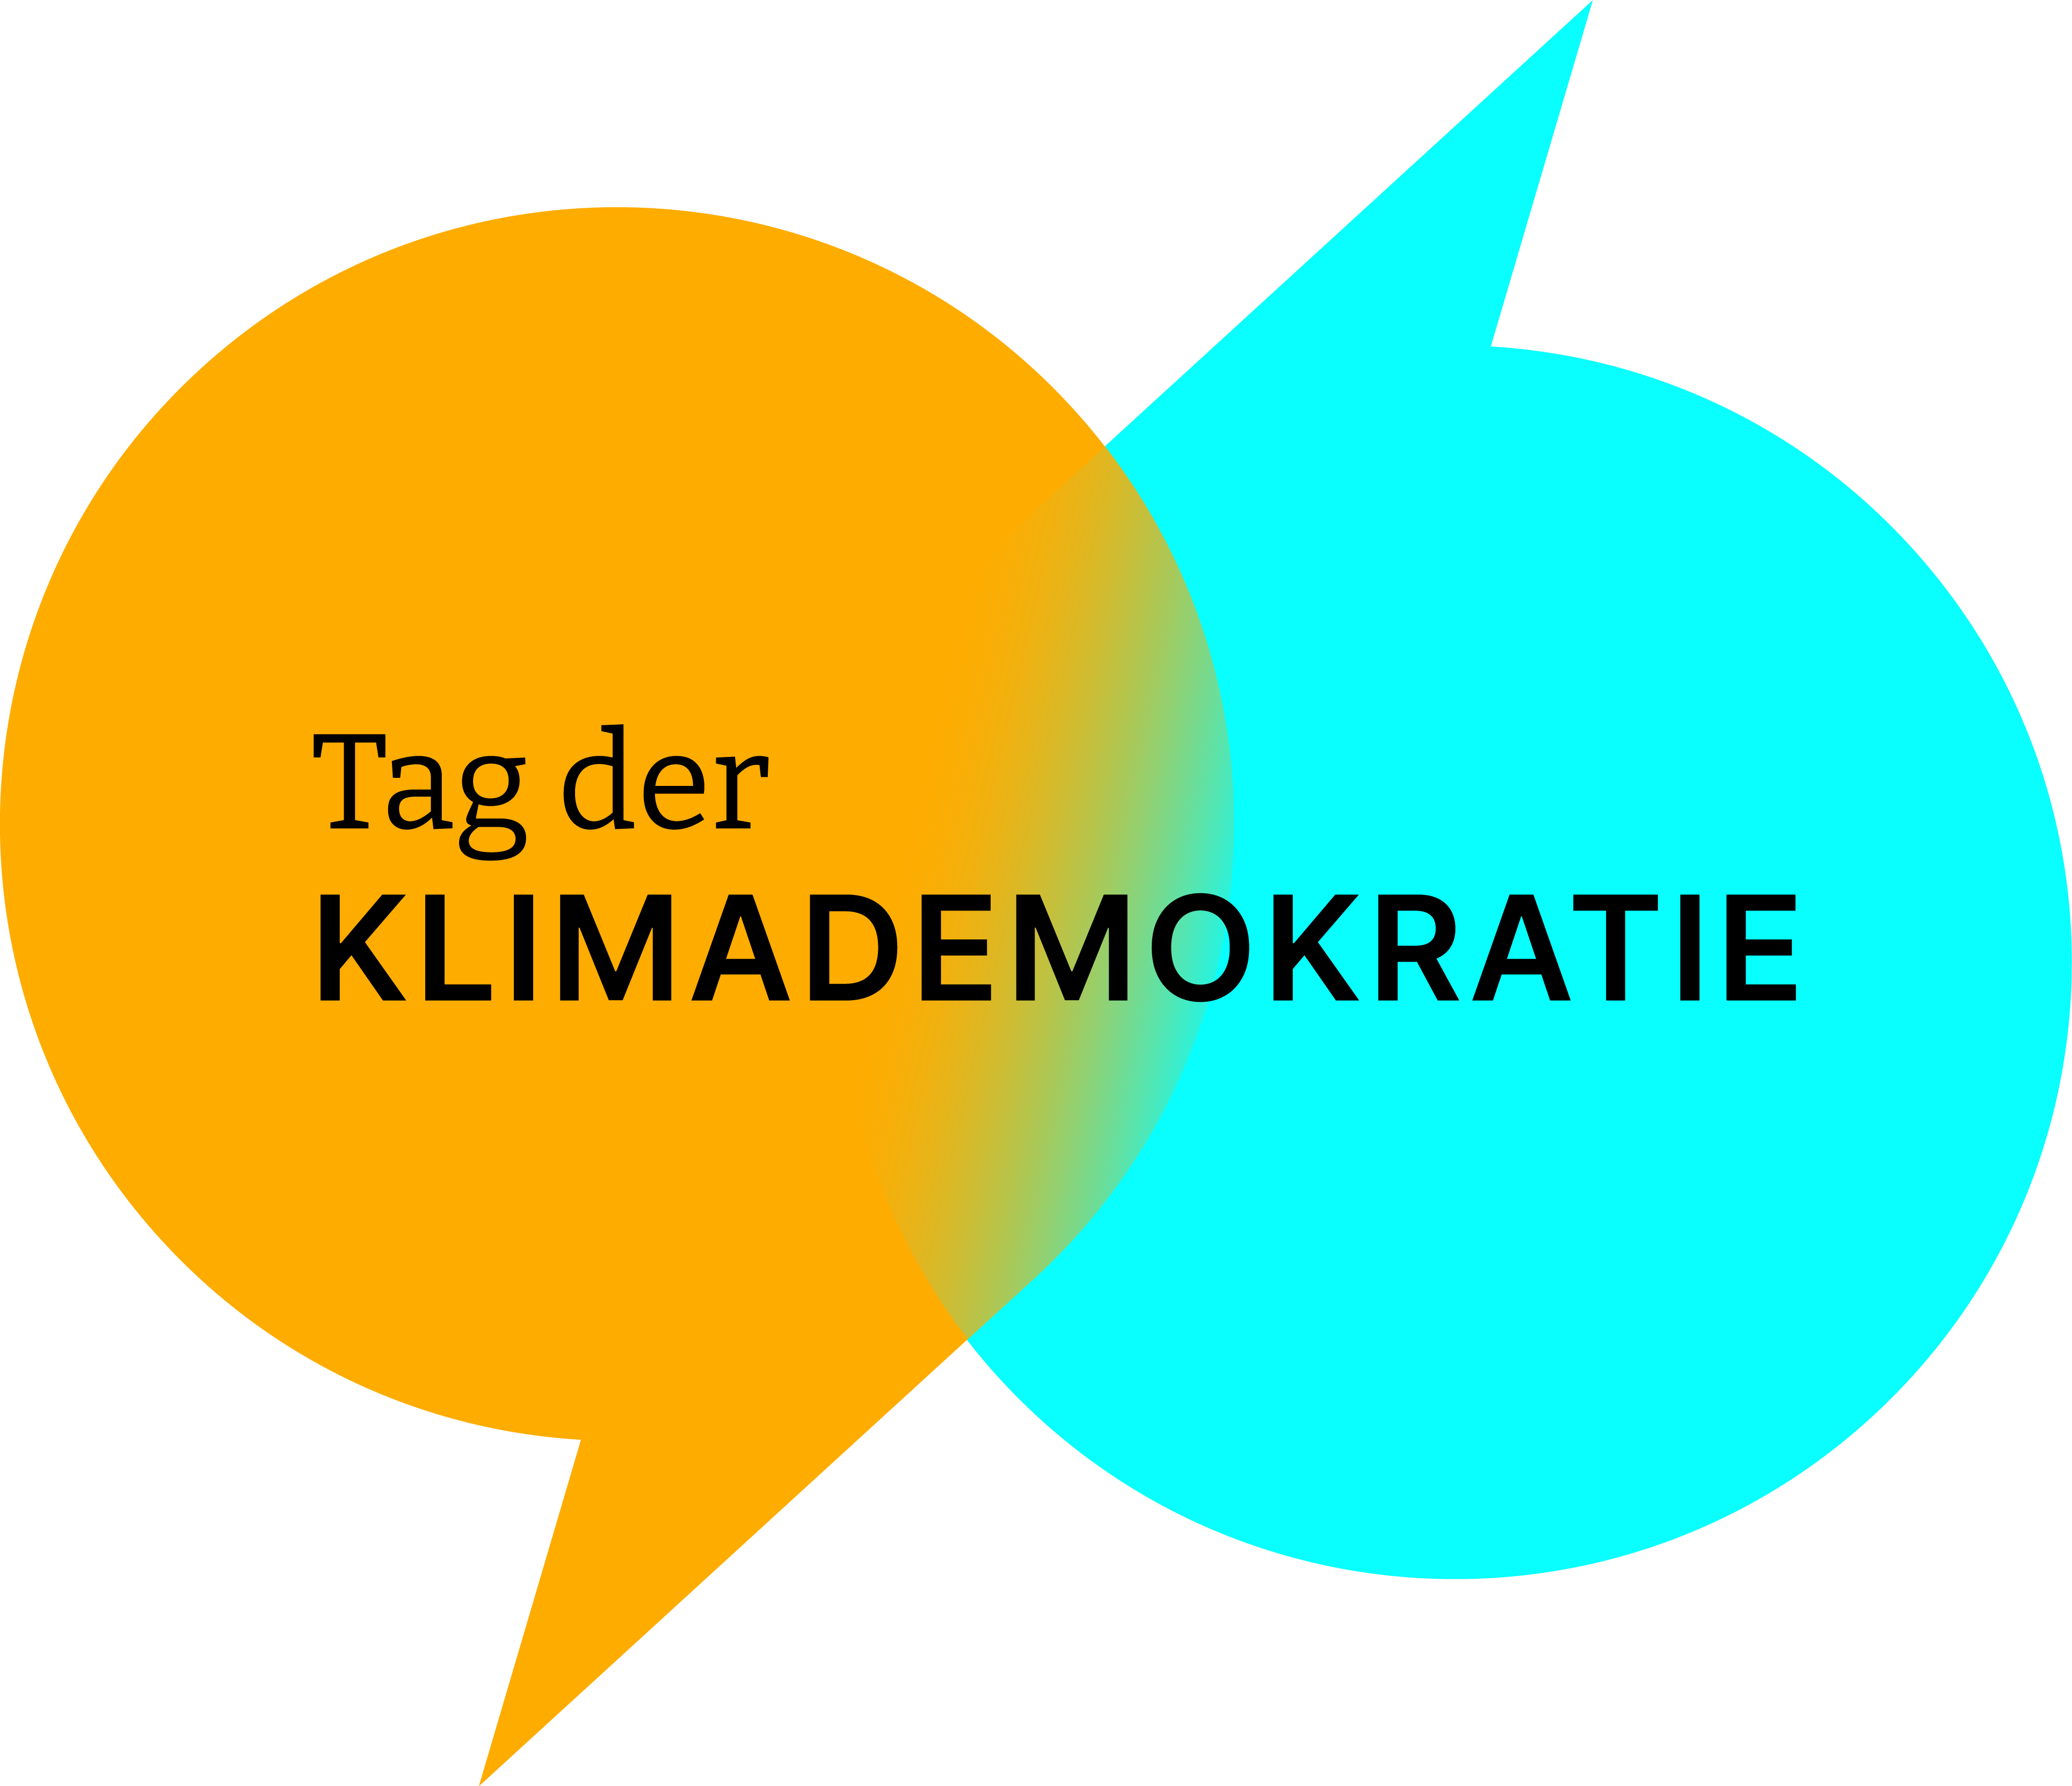 Zwei Sprechblasen mit der Aufschrift "Tag der Klimademokratie"